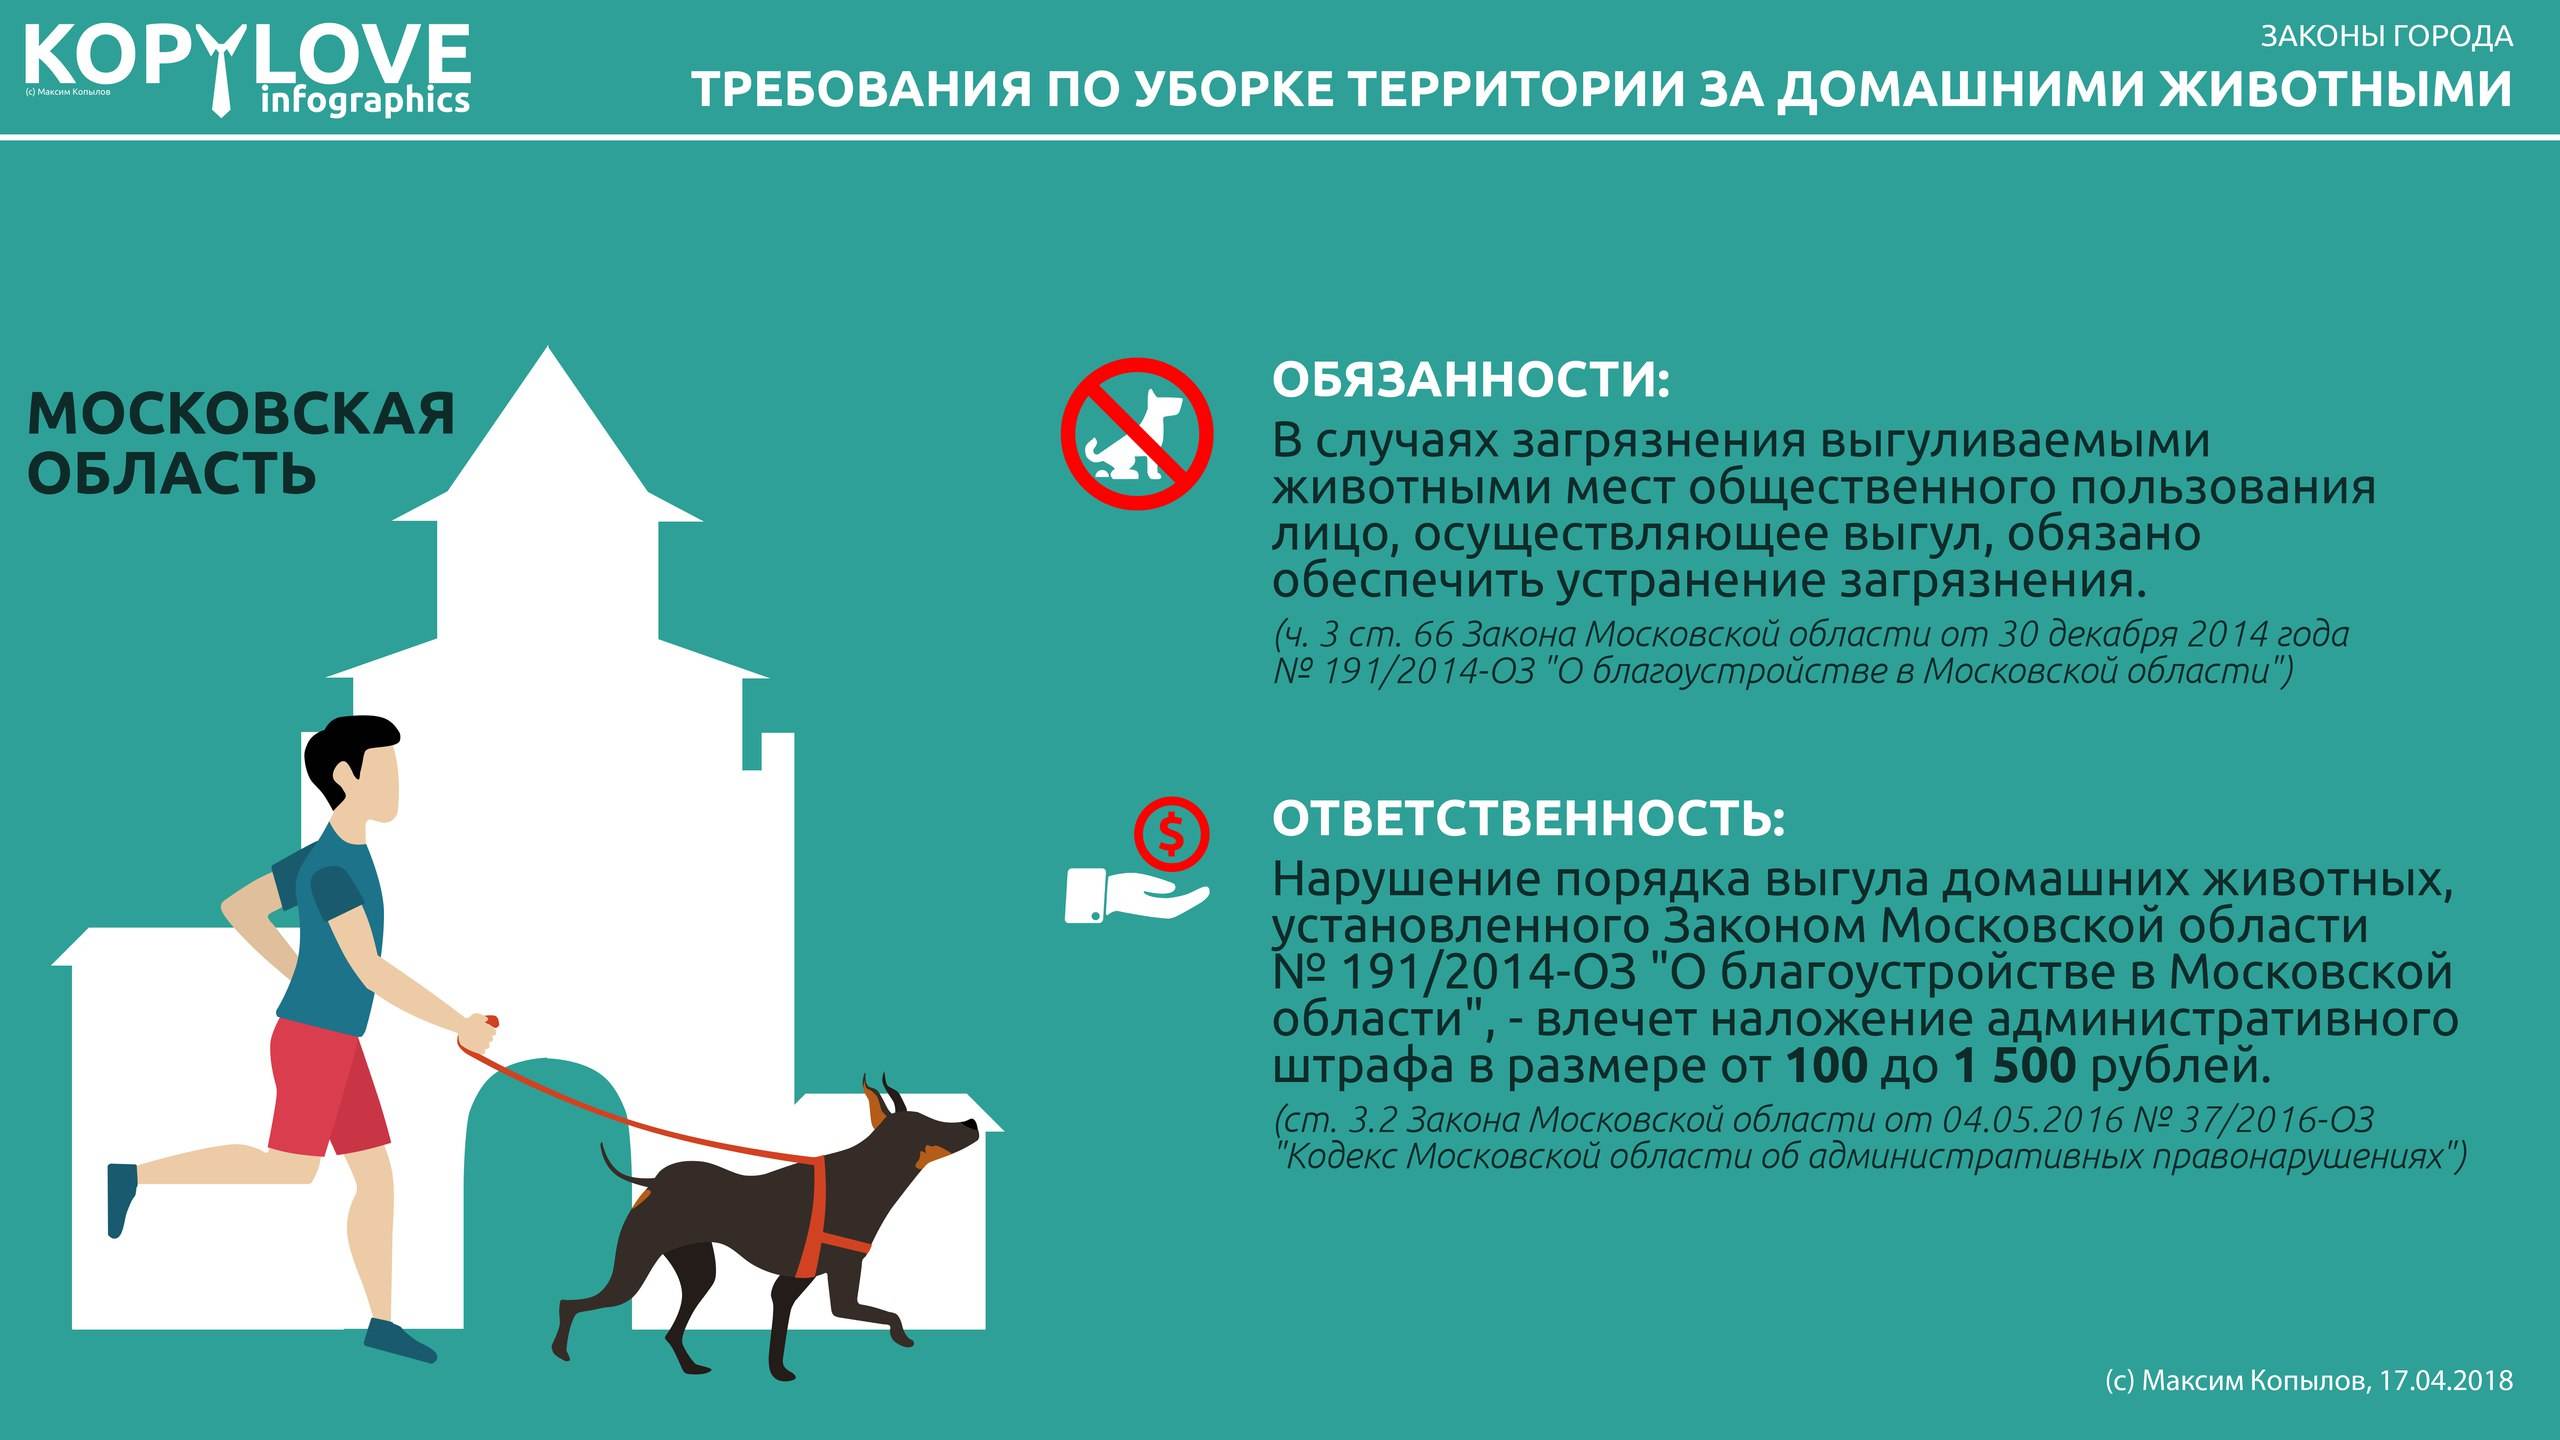 Правила и закон о содержании домашних животных в многоквартирных домах